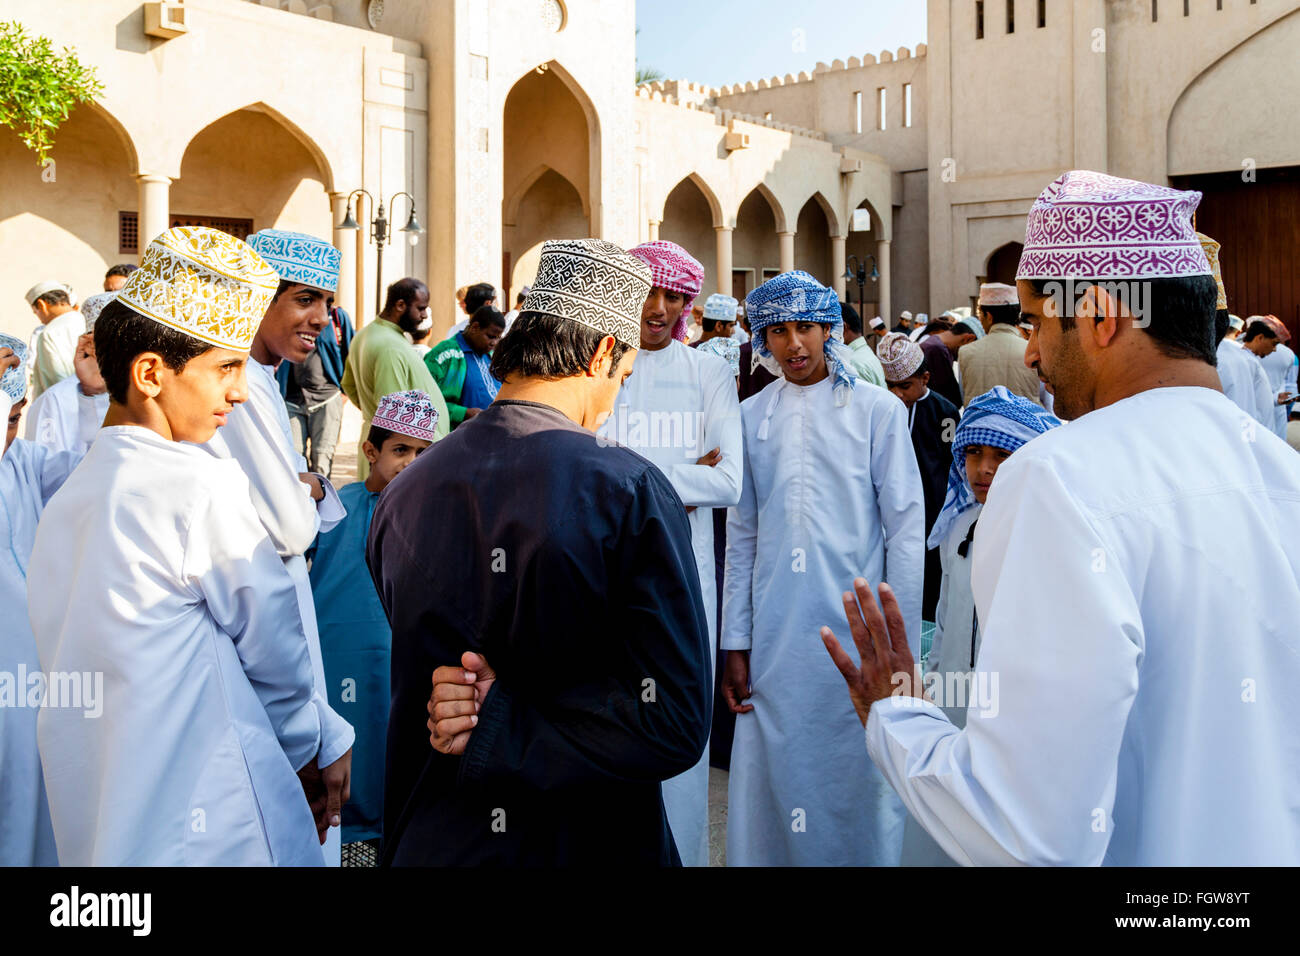 Un groupe d'hommes omanais à l'Chat Vendredi, marché aux oiseaux, Ad Dakhiliyah Nizwa, Oman Région Banque D'Images